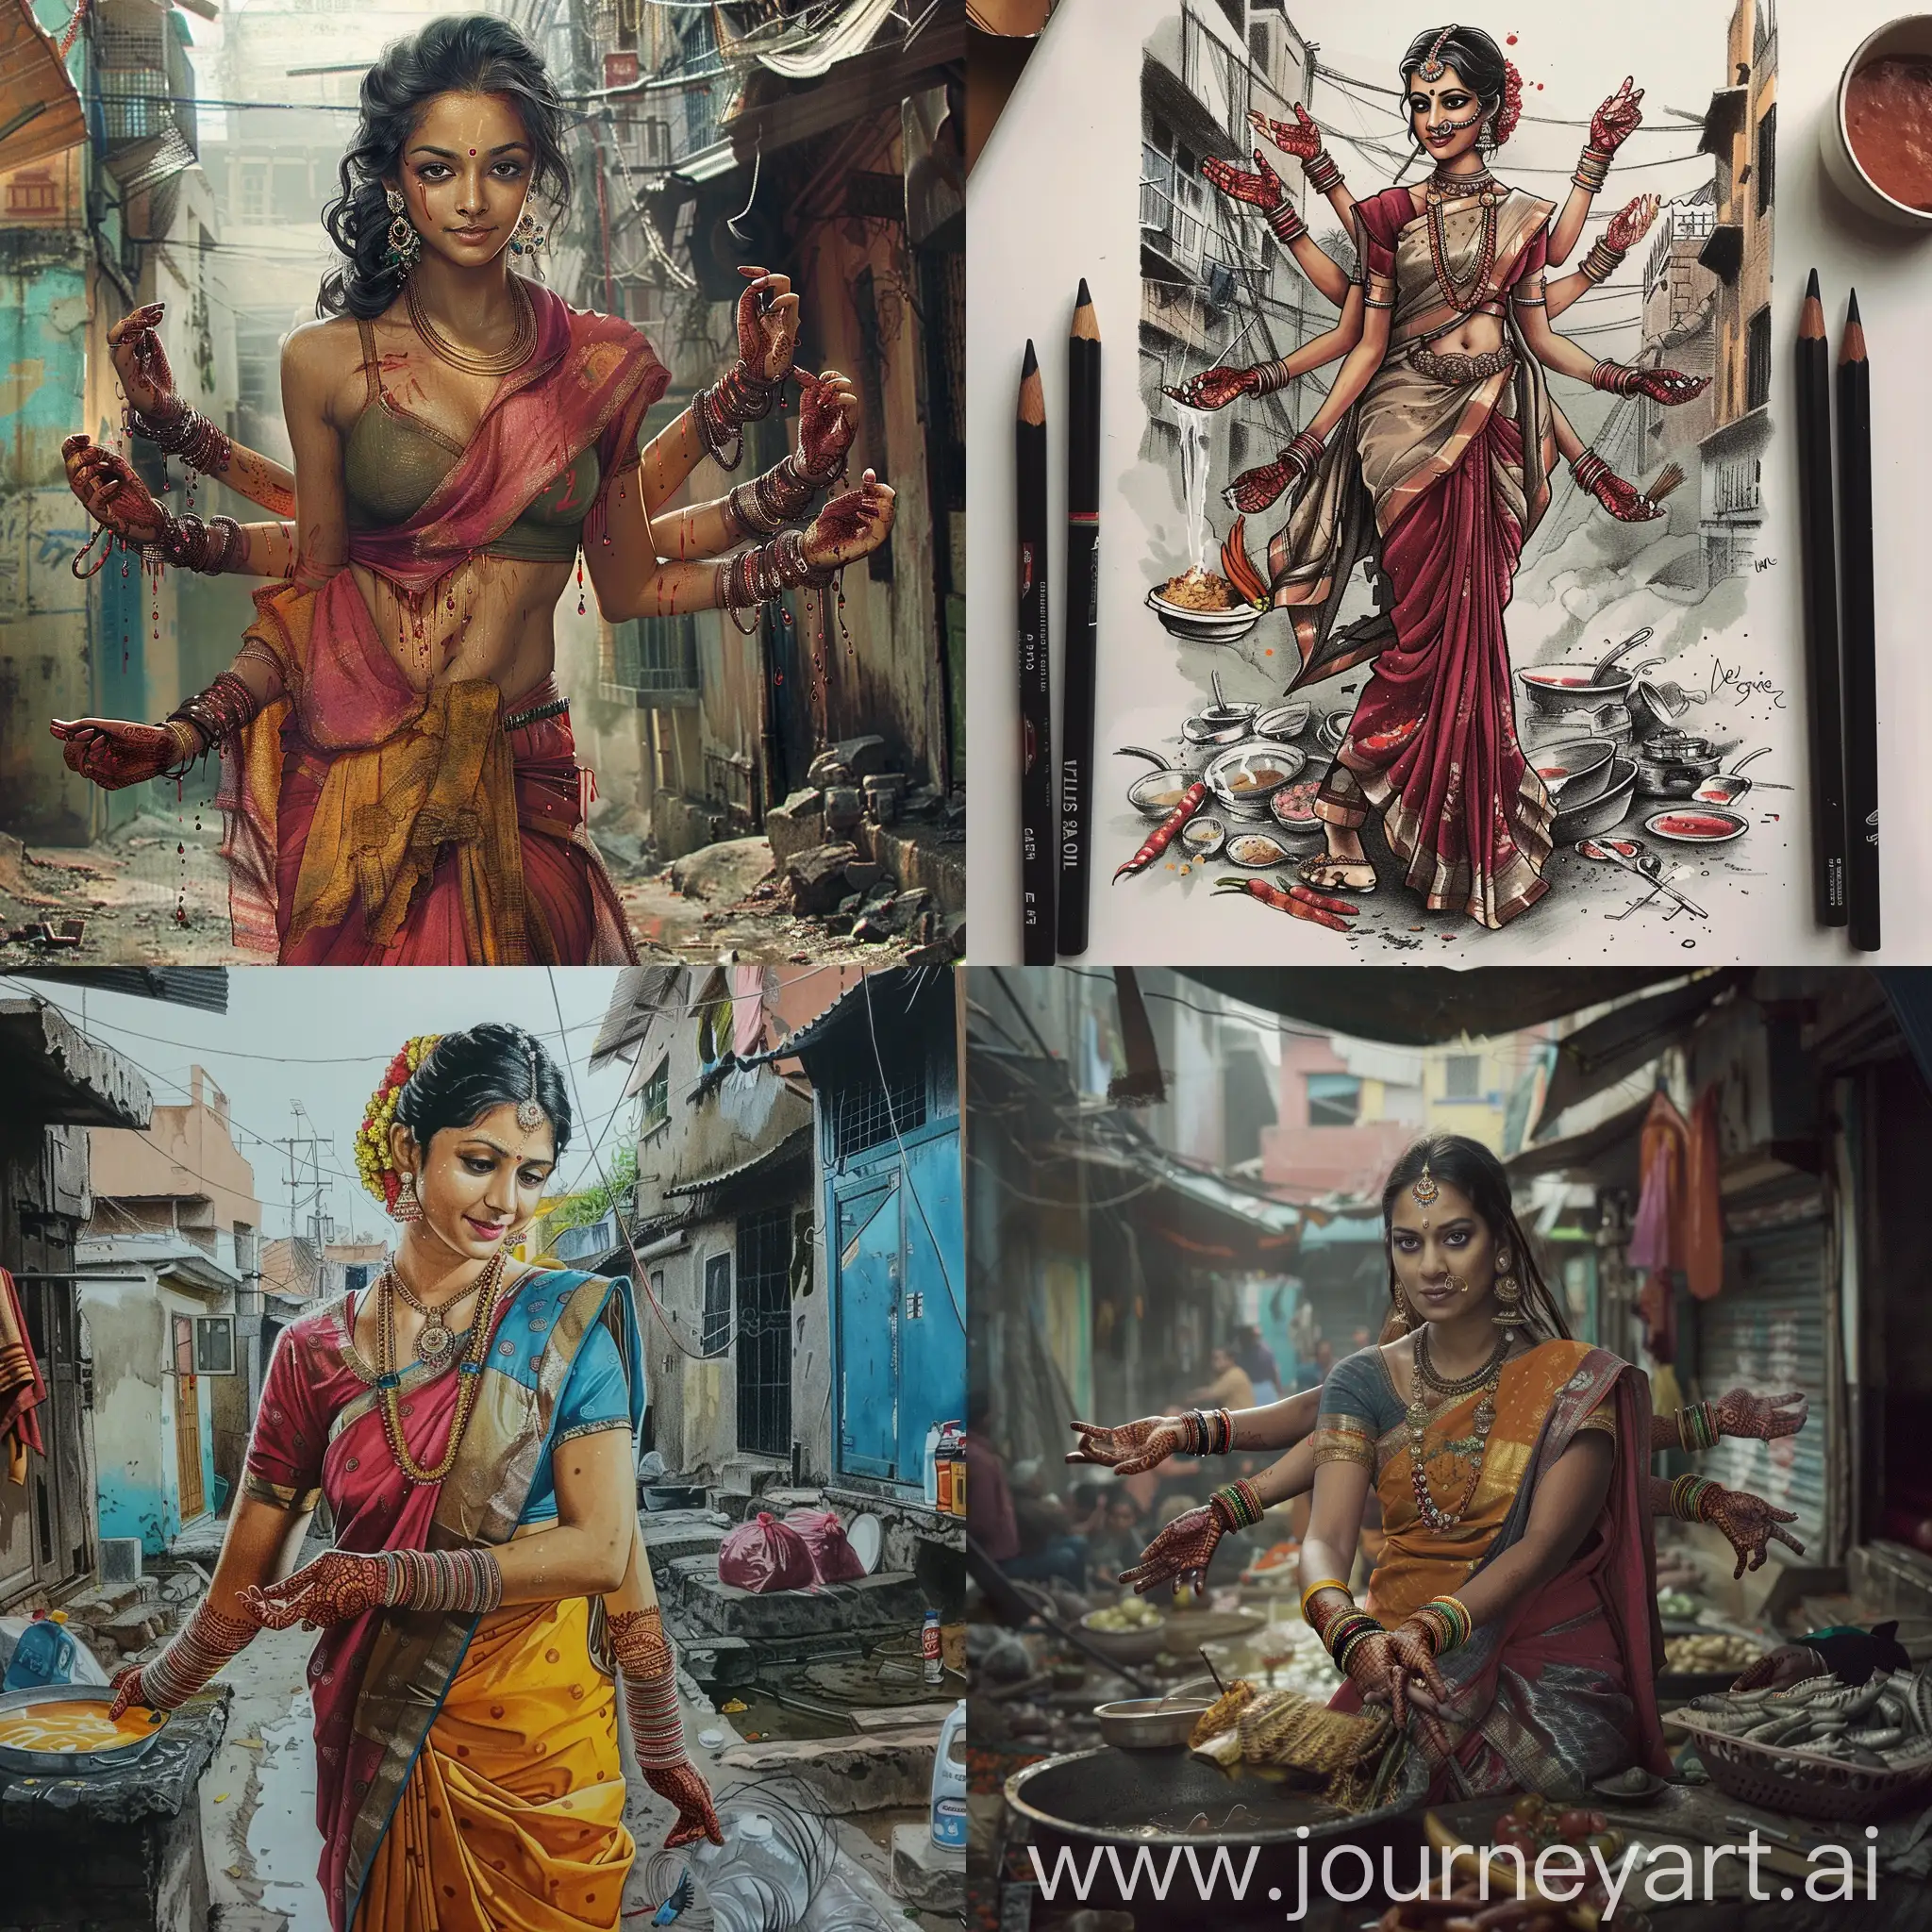 Нарисуй прекрасную женщину с отличной фигурой, индийской национальности, у которой 6 рук, она убирает, готовит и стирает ими на фоне трущоб